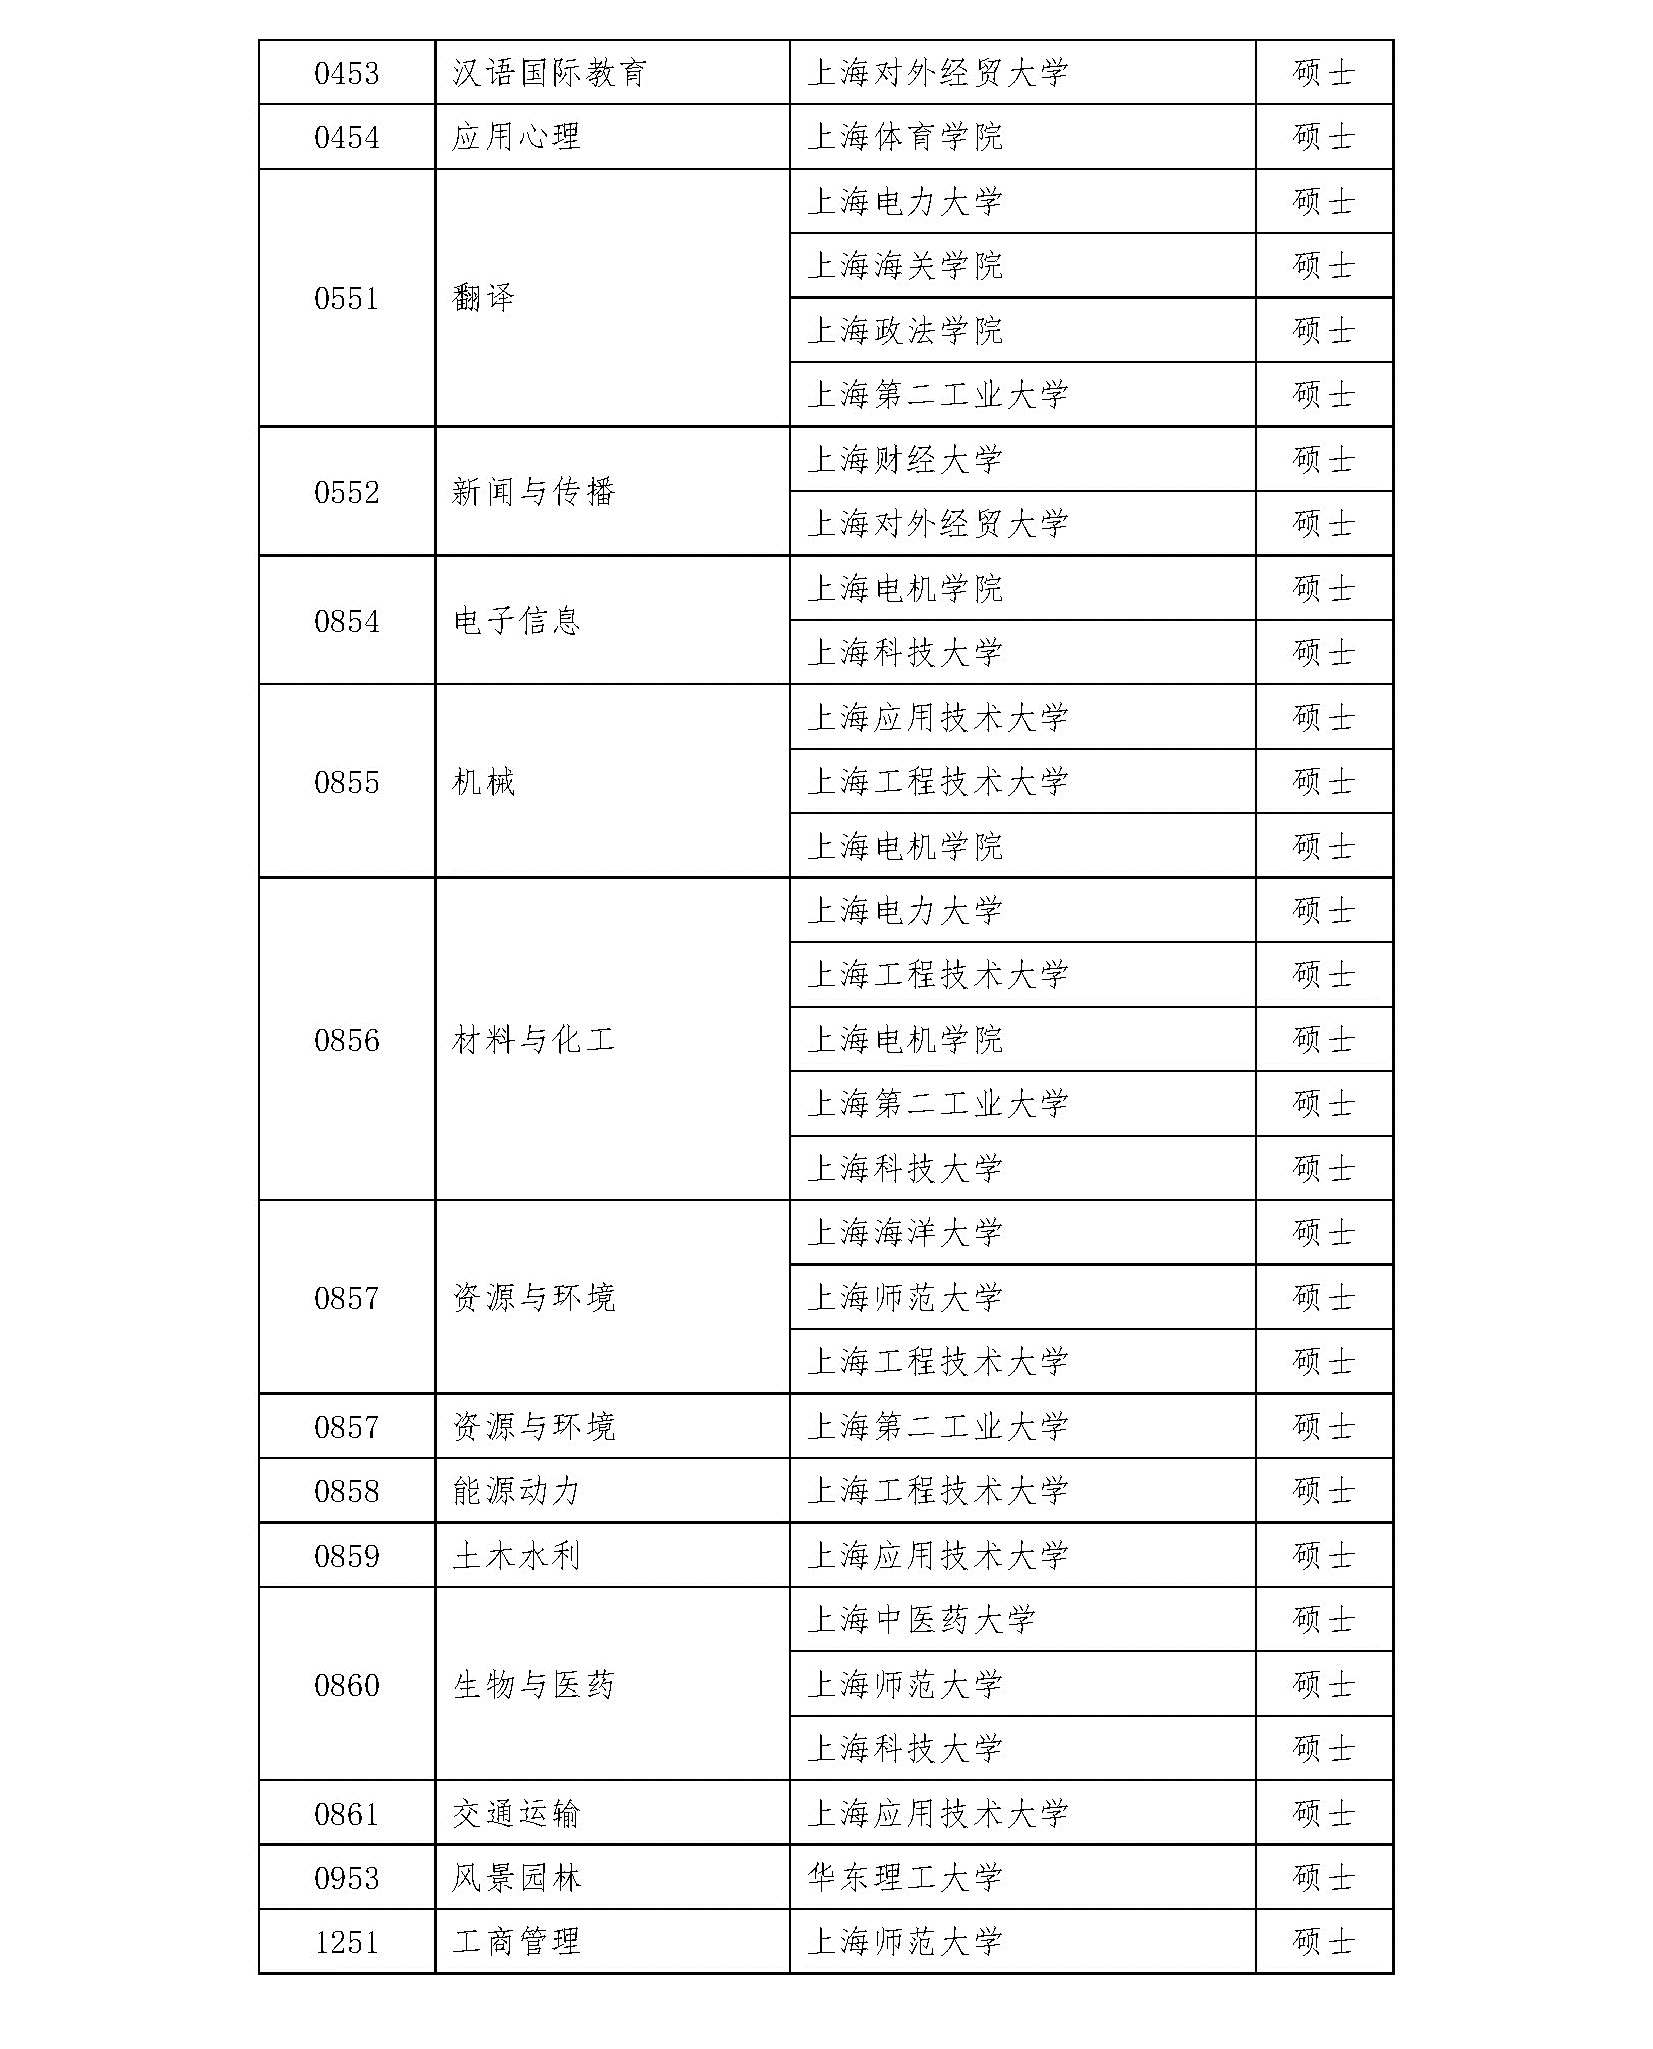 2020硕士新增学位点：上海市2020年博士硕士学位授权审核推荐名单及材料网上公示